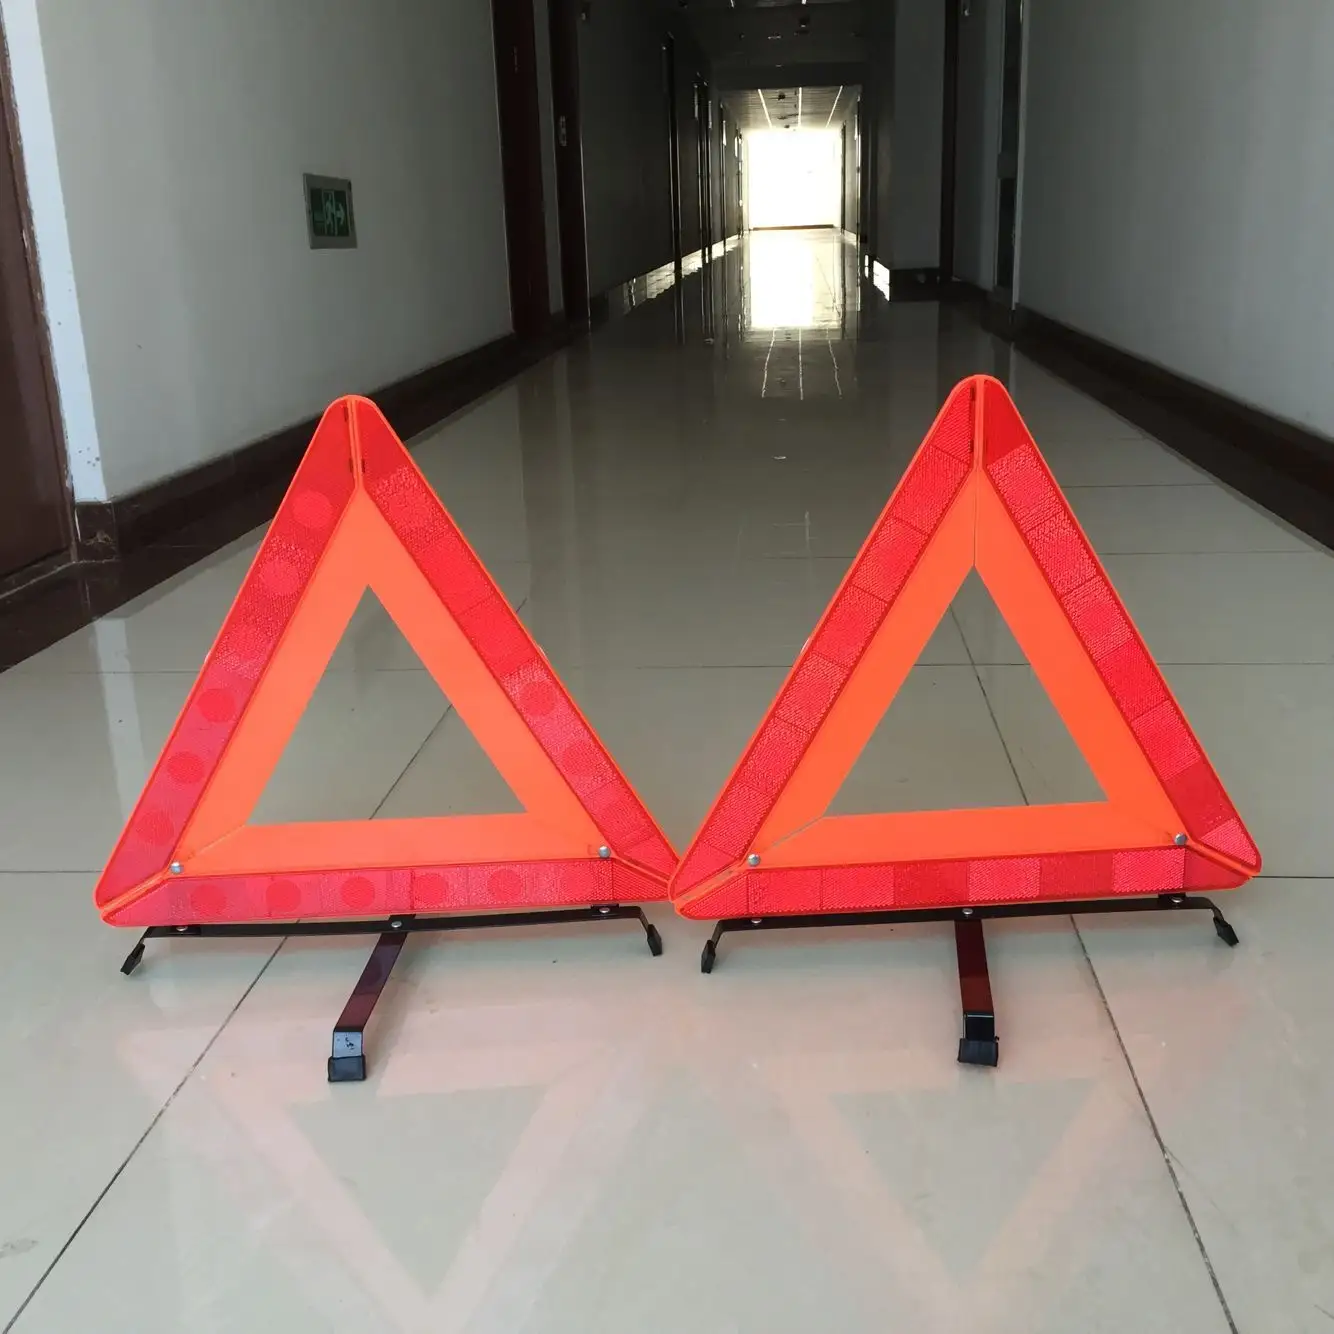 Noodwaarschuwing Driehoekteken Verkeersveiligheidsreflector Auto